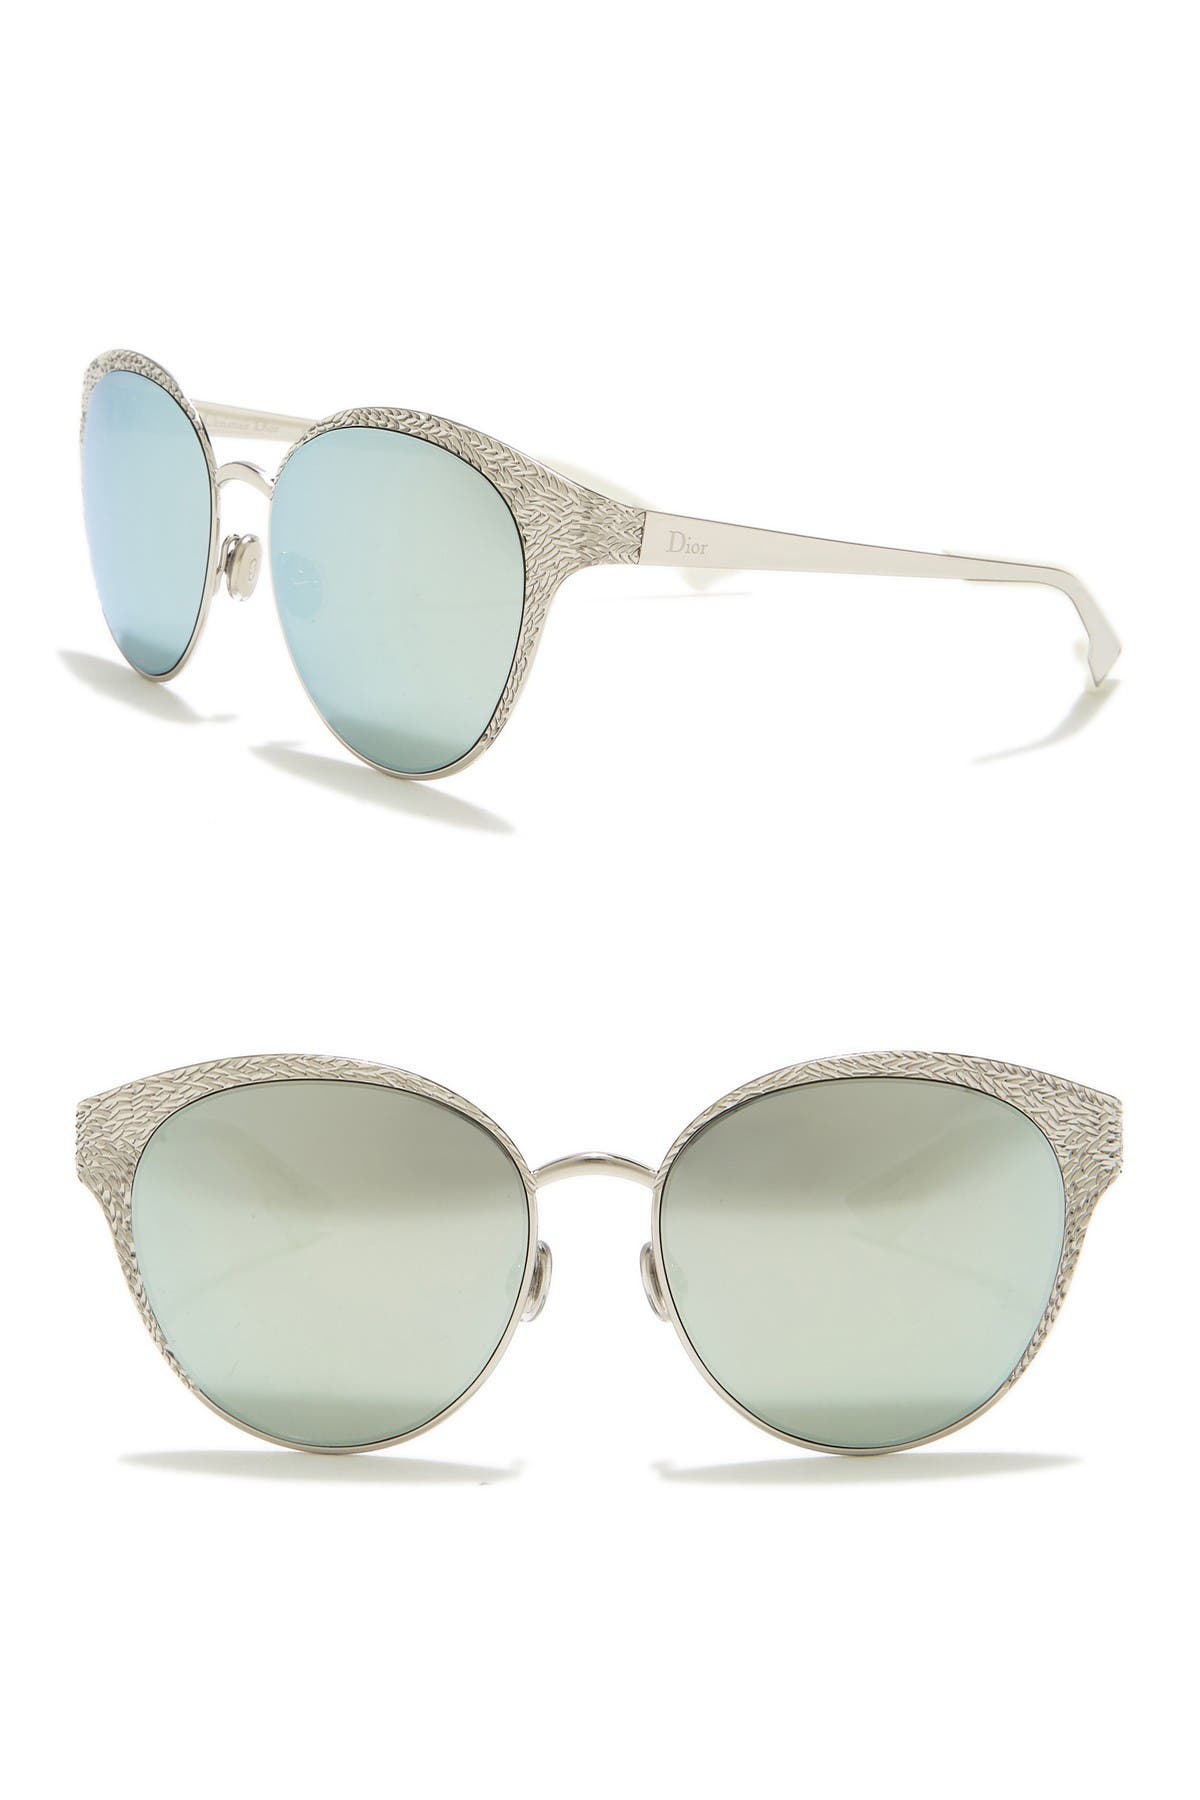 dior unique sunglasses